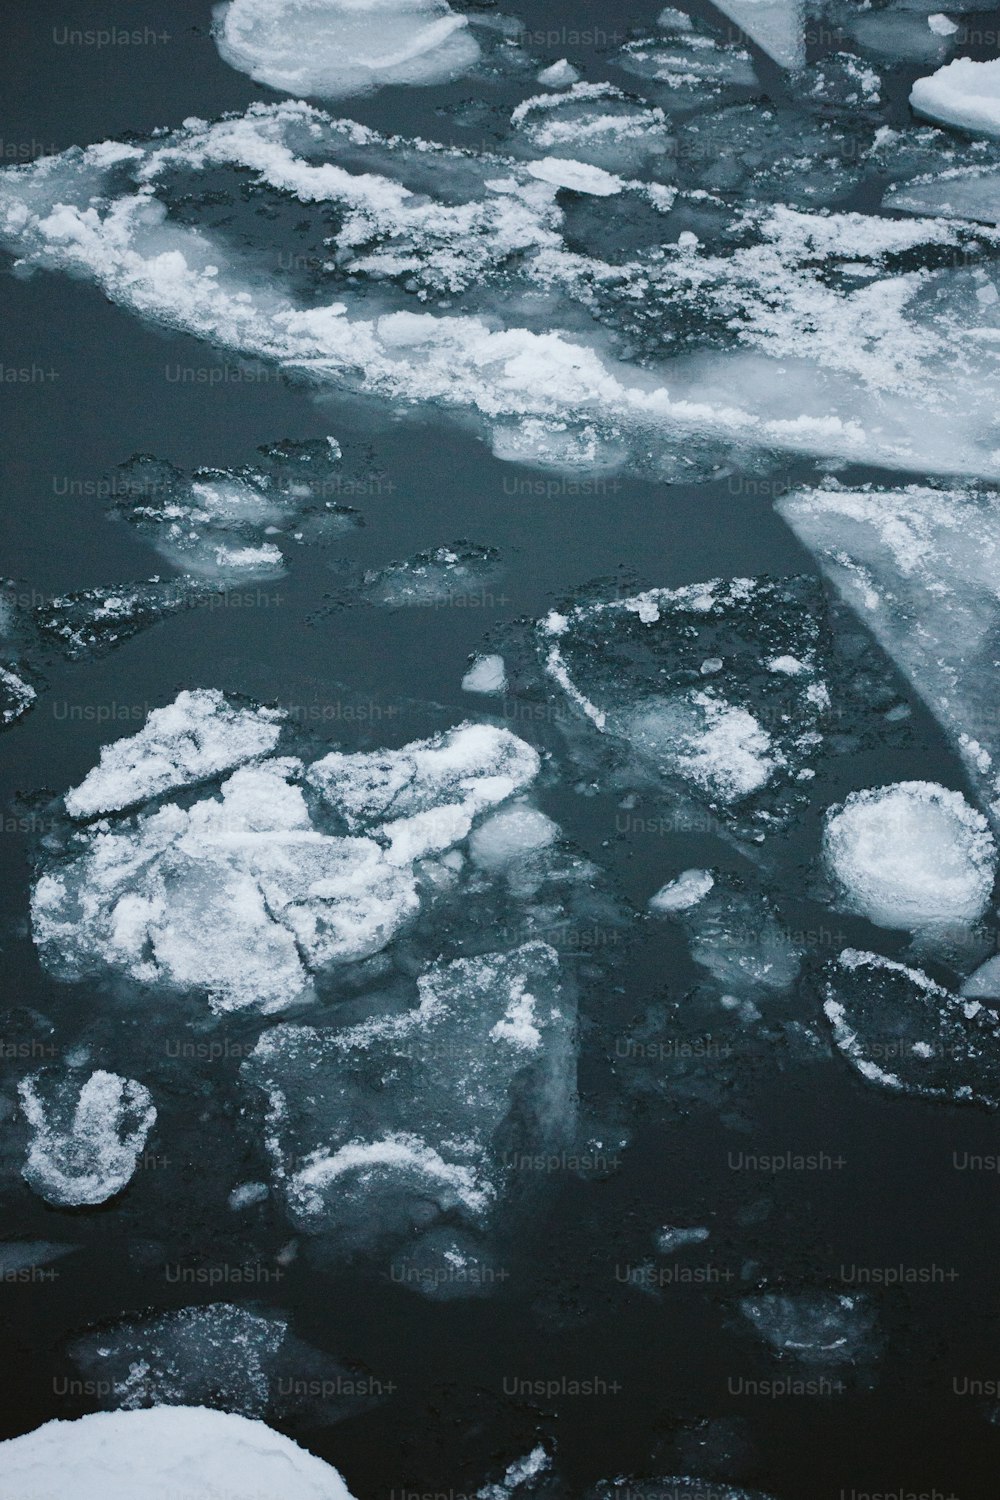 Eisschollen schwimmen auf einem Gewässer